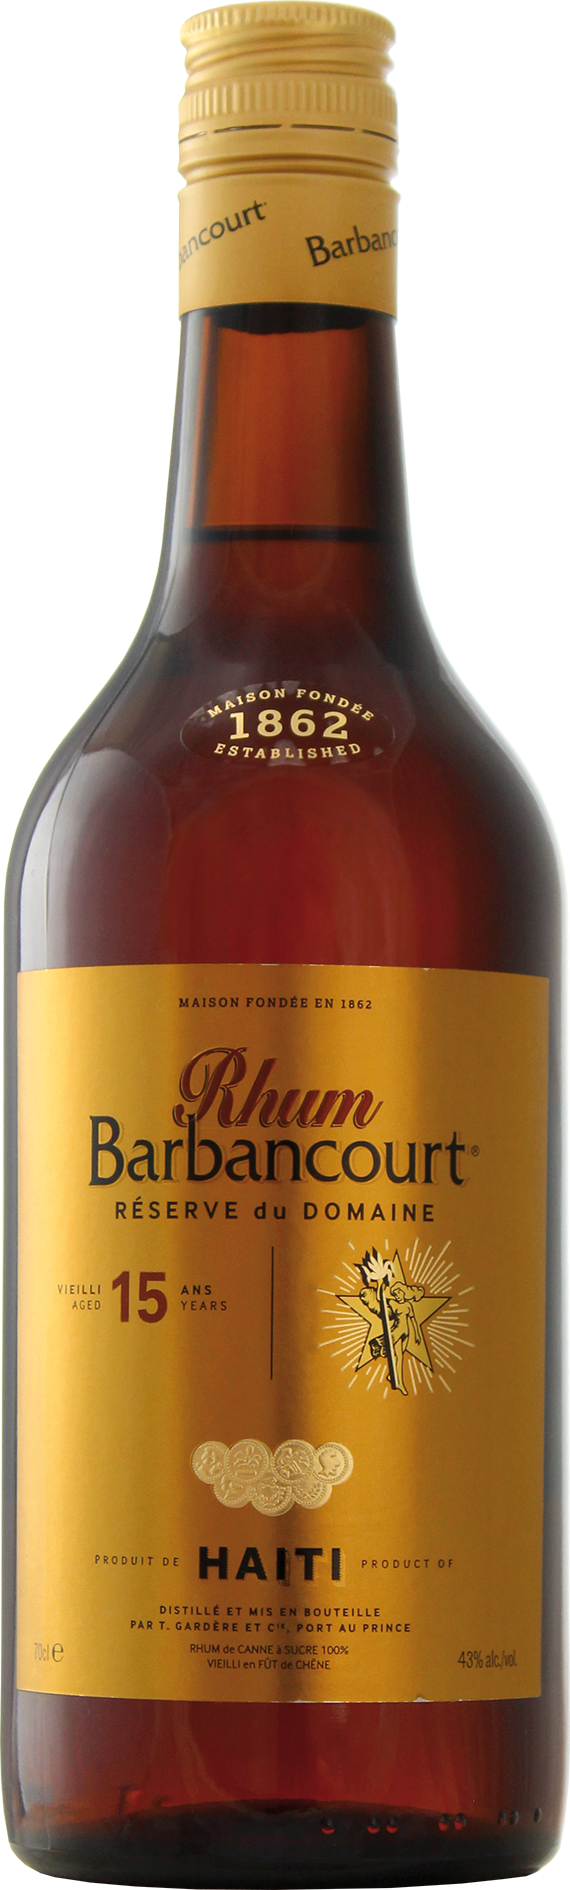 Flasche Barbancourt 15 Jahre